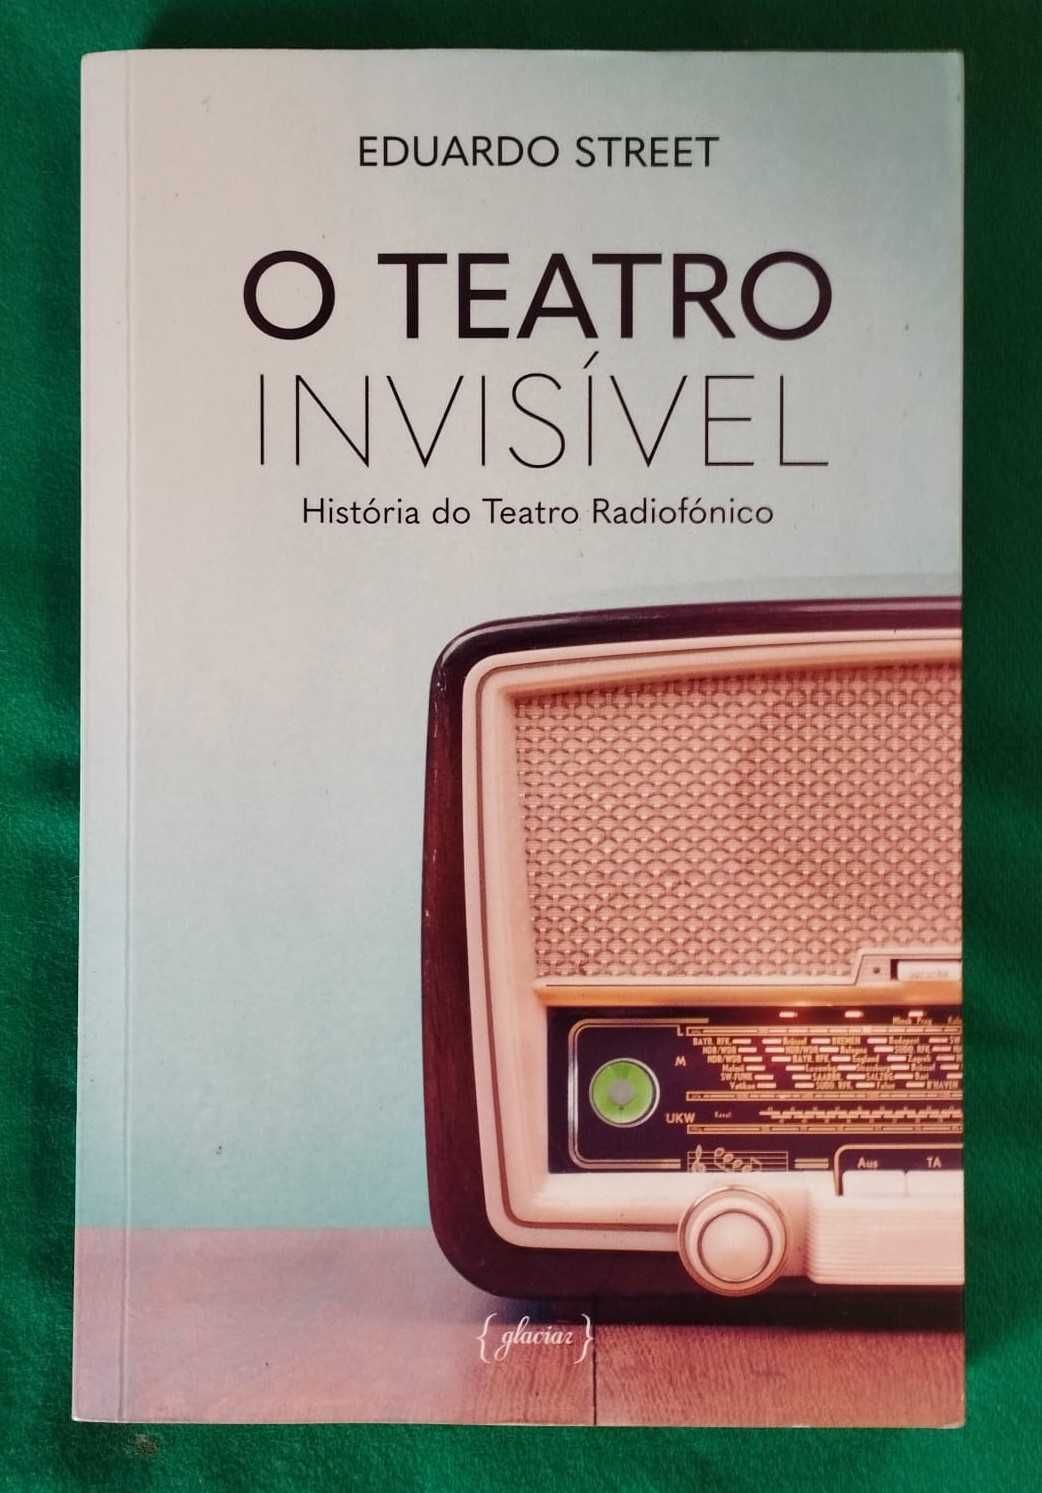 O Teatro invisível, de Eduardo Street